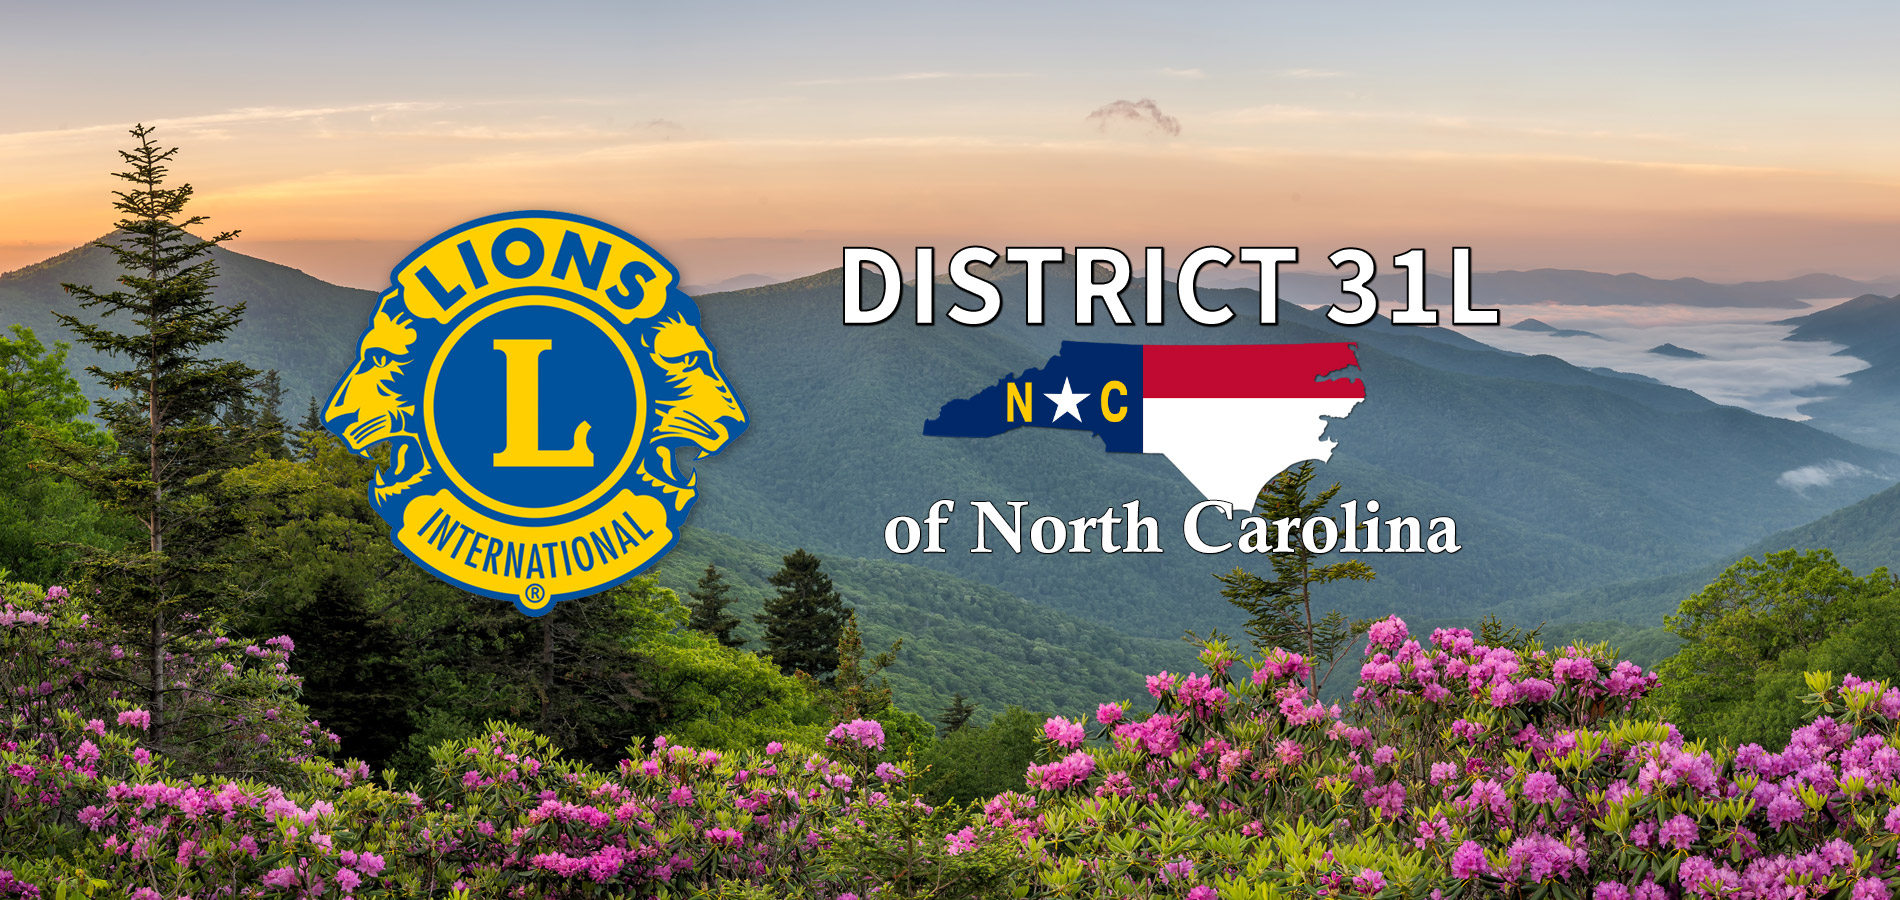 Lions Club Newsletter District 31 L North Carolina